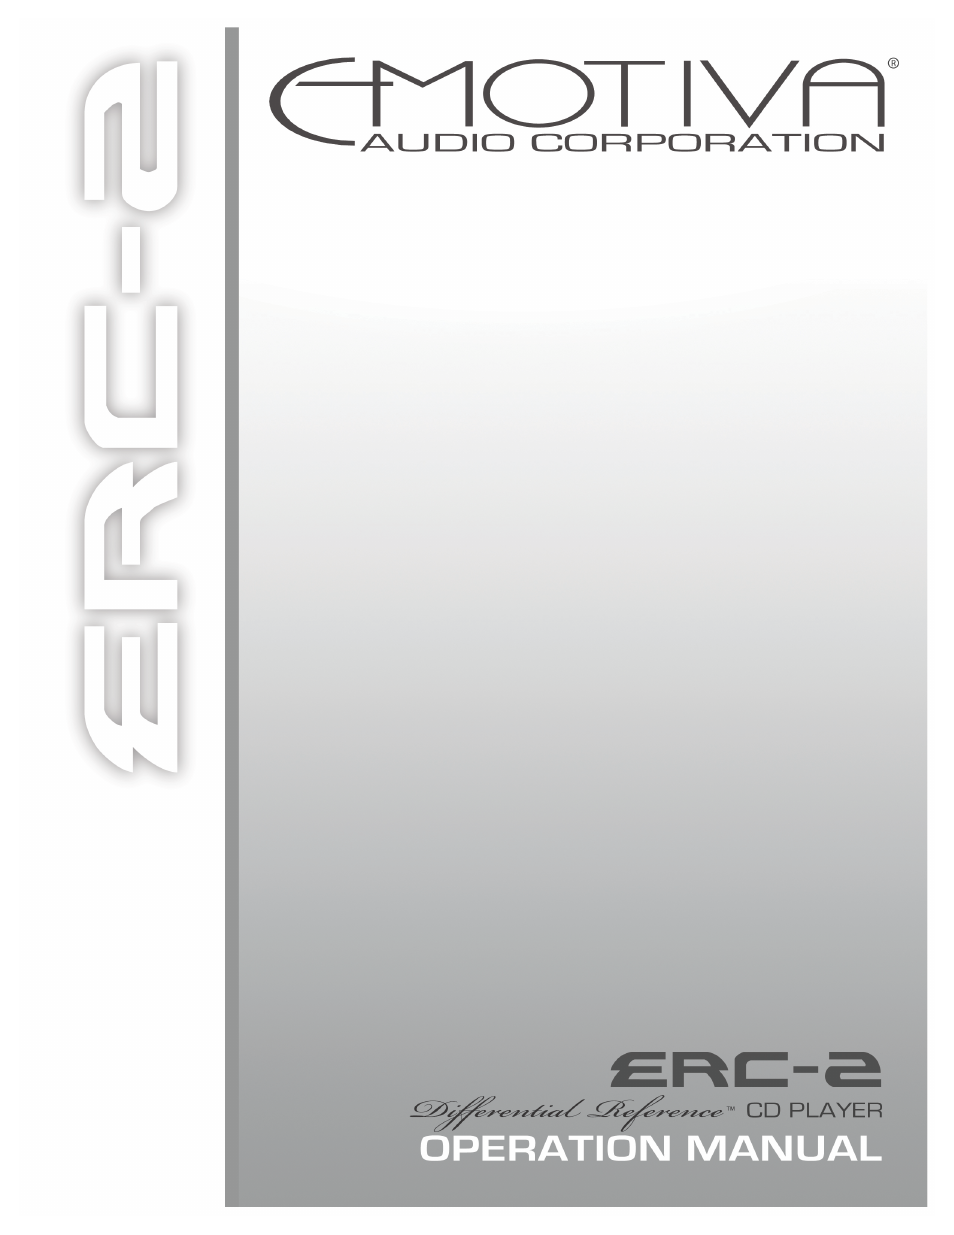 ERC-2